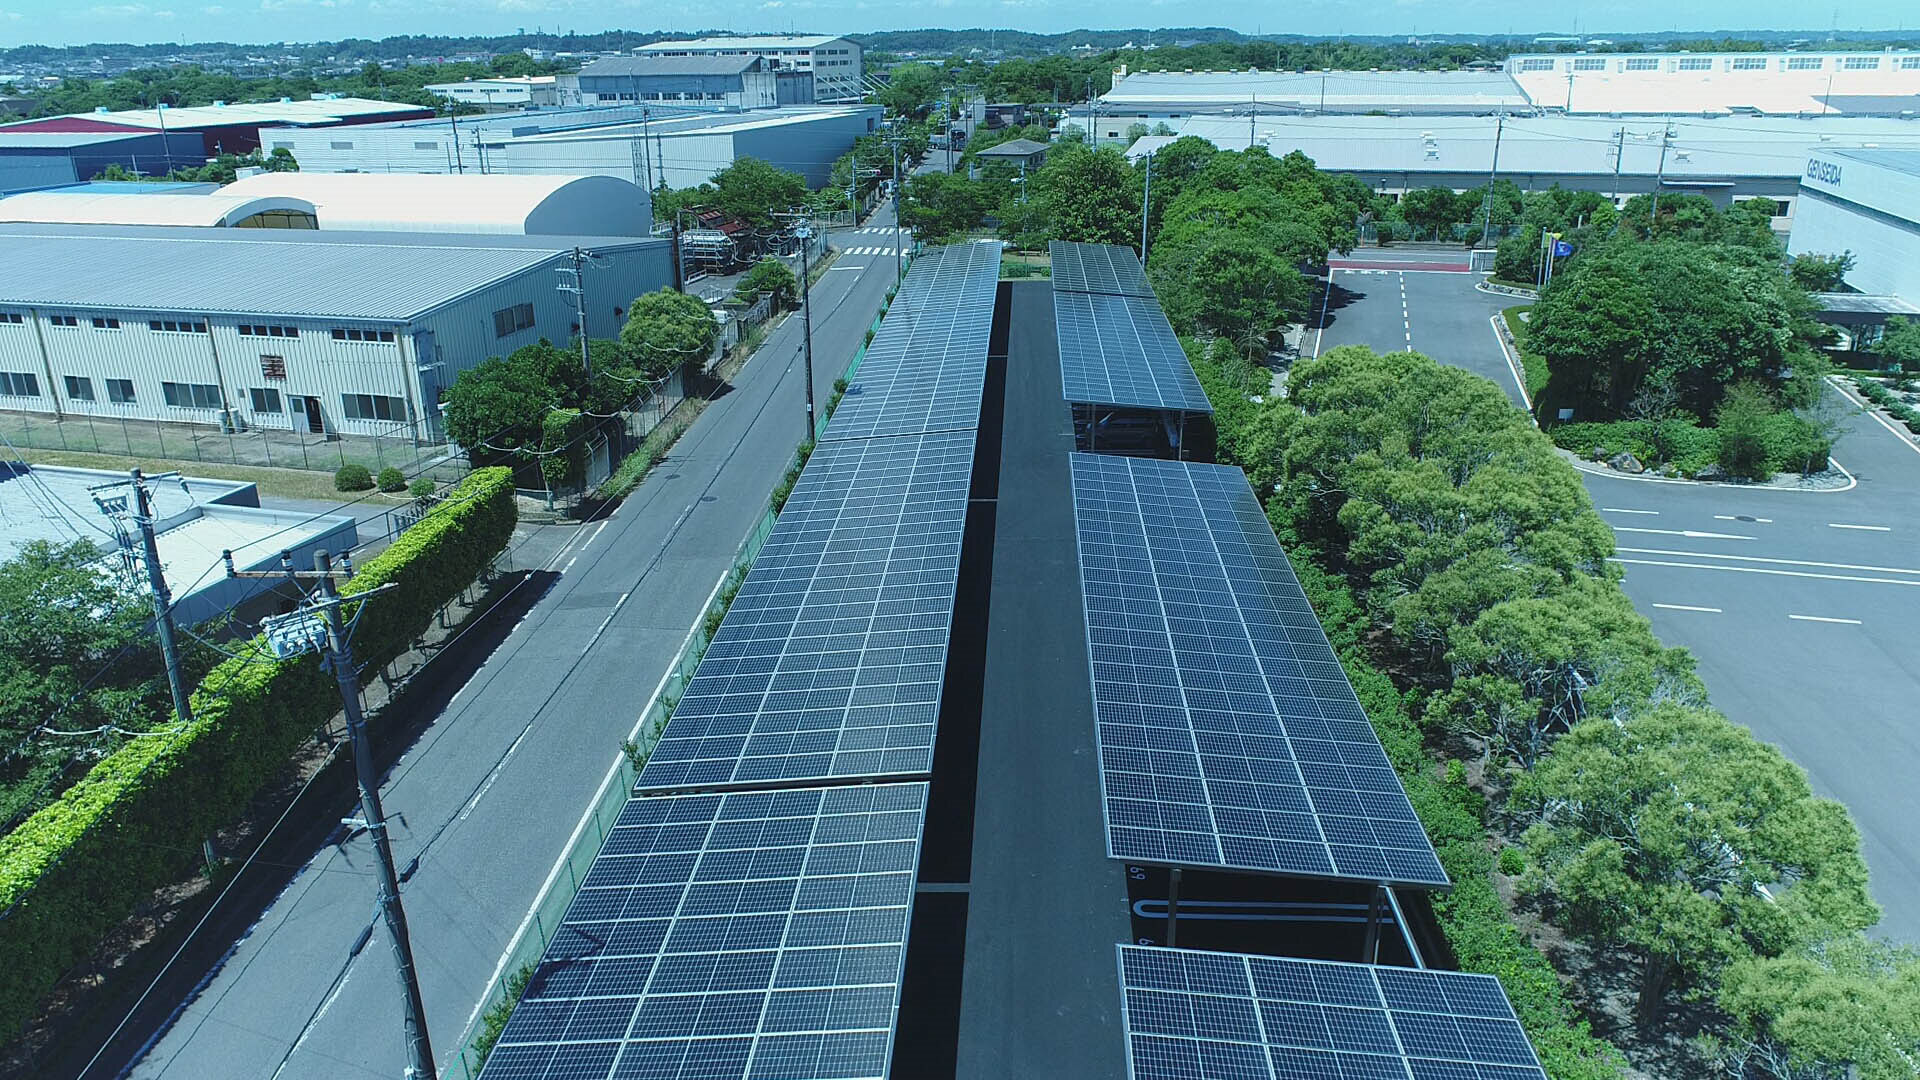 โรงจอดรถในประเทศญี่ปุ่นขนาด 0.3MW โครงการผลิตไฟฟ้าแบบกระจายอุตสาหกรรมและเชิงพาณิชย์